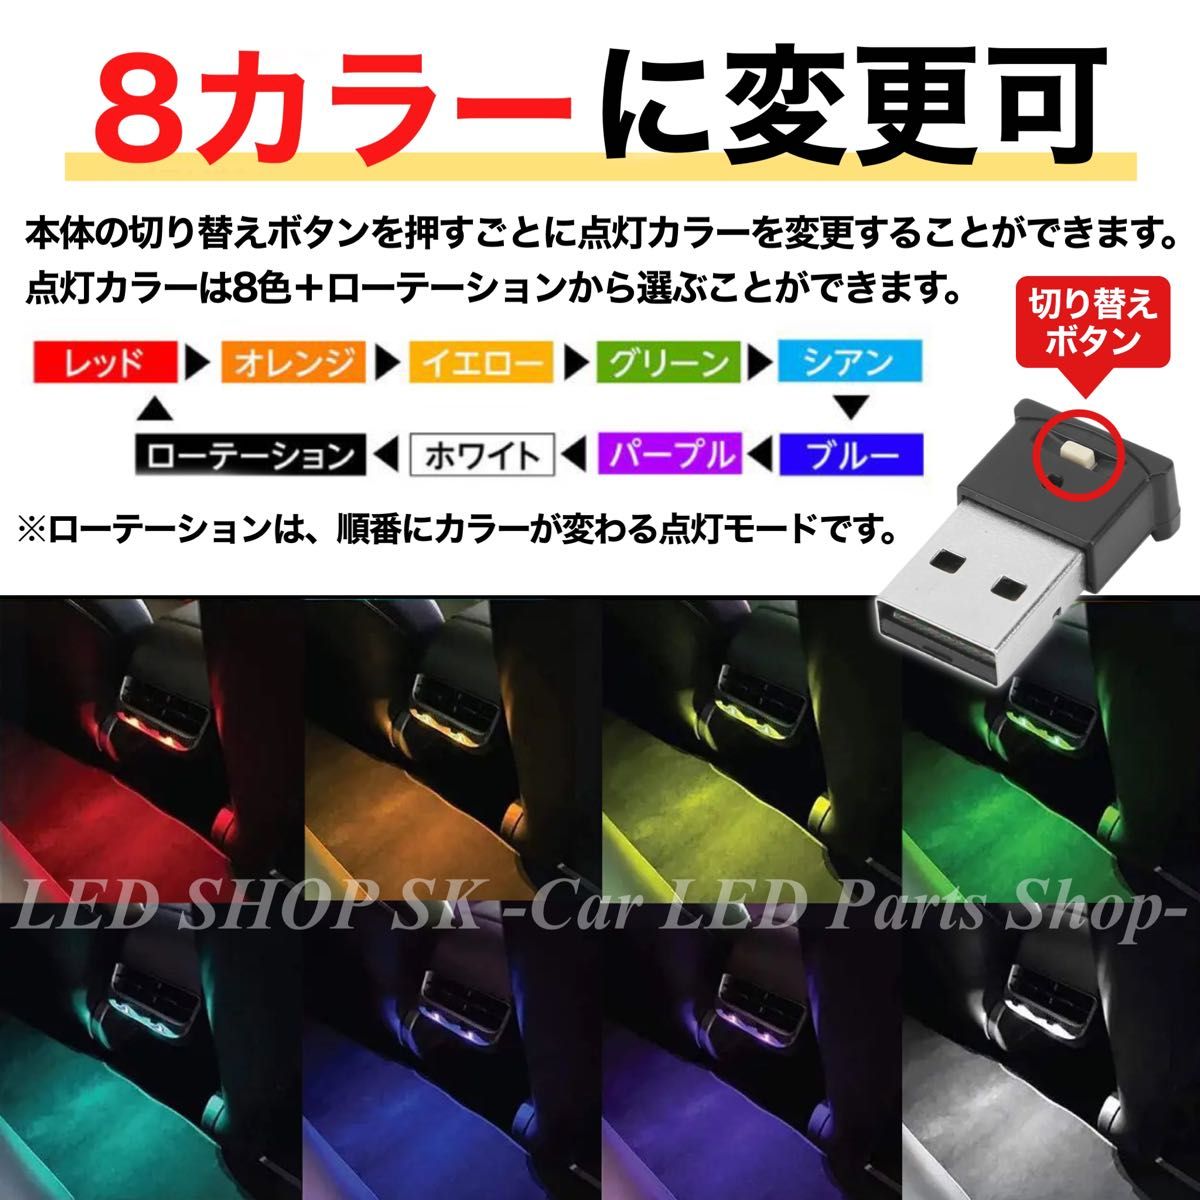 8色 カラー RGB USB LED イルミライト 車内 イルミネーション 光センサー 調光 記憶メモリー付 1個入